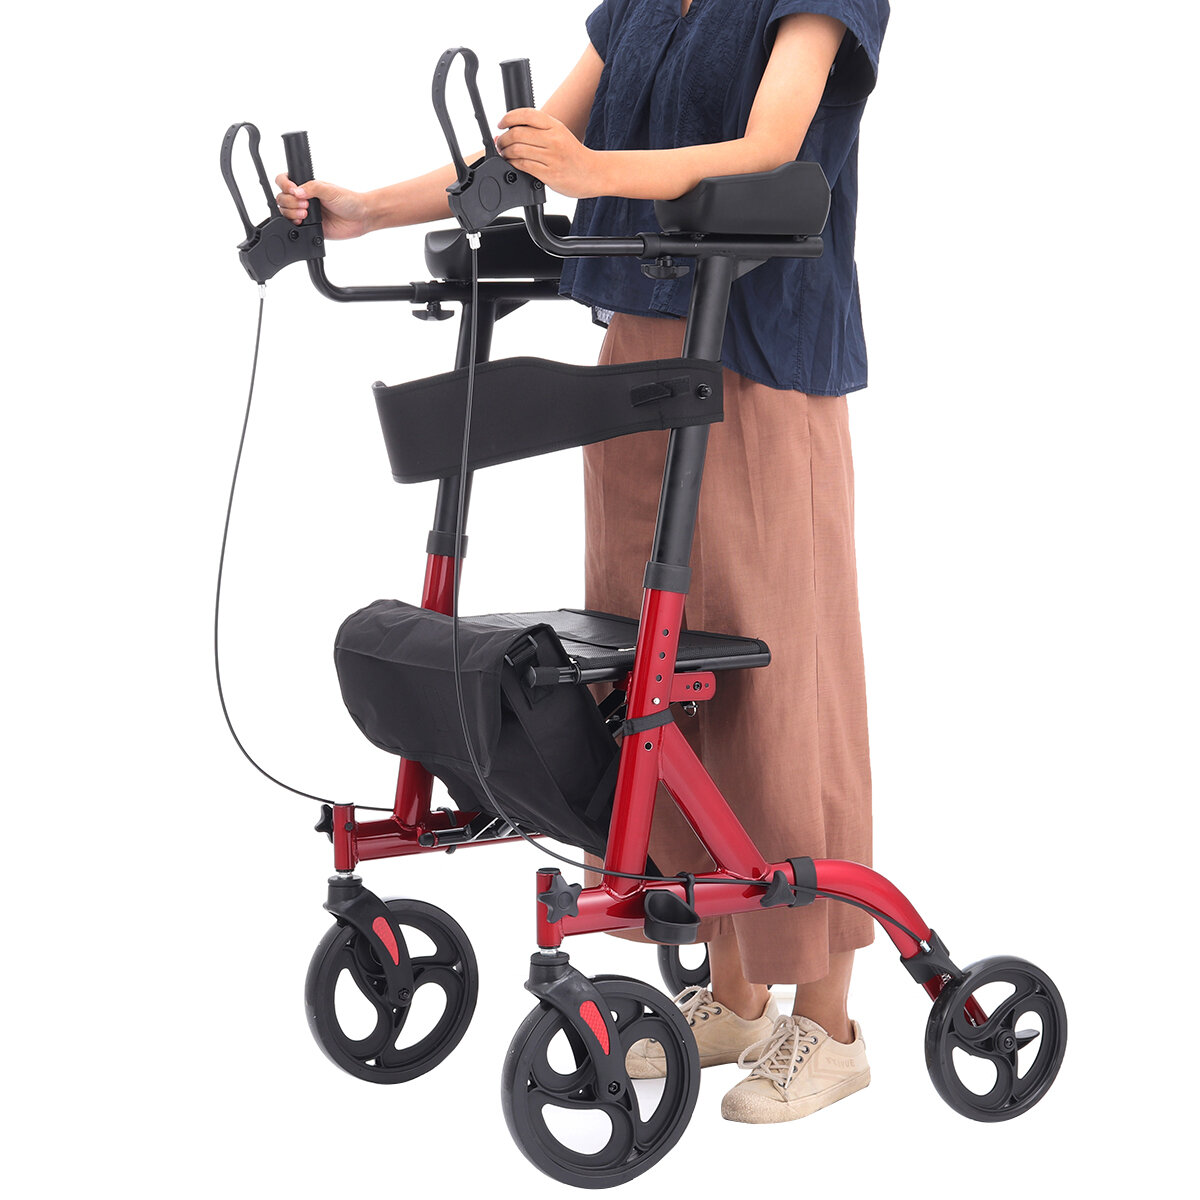 

4 Wheel Seat Rolling Walker Chair Rollator Foldable Adjustable Elderly Aid Backrest